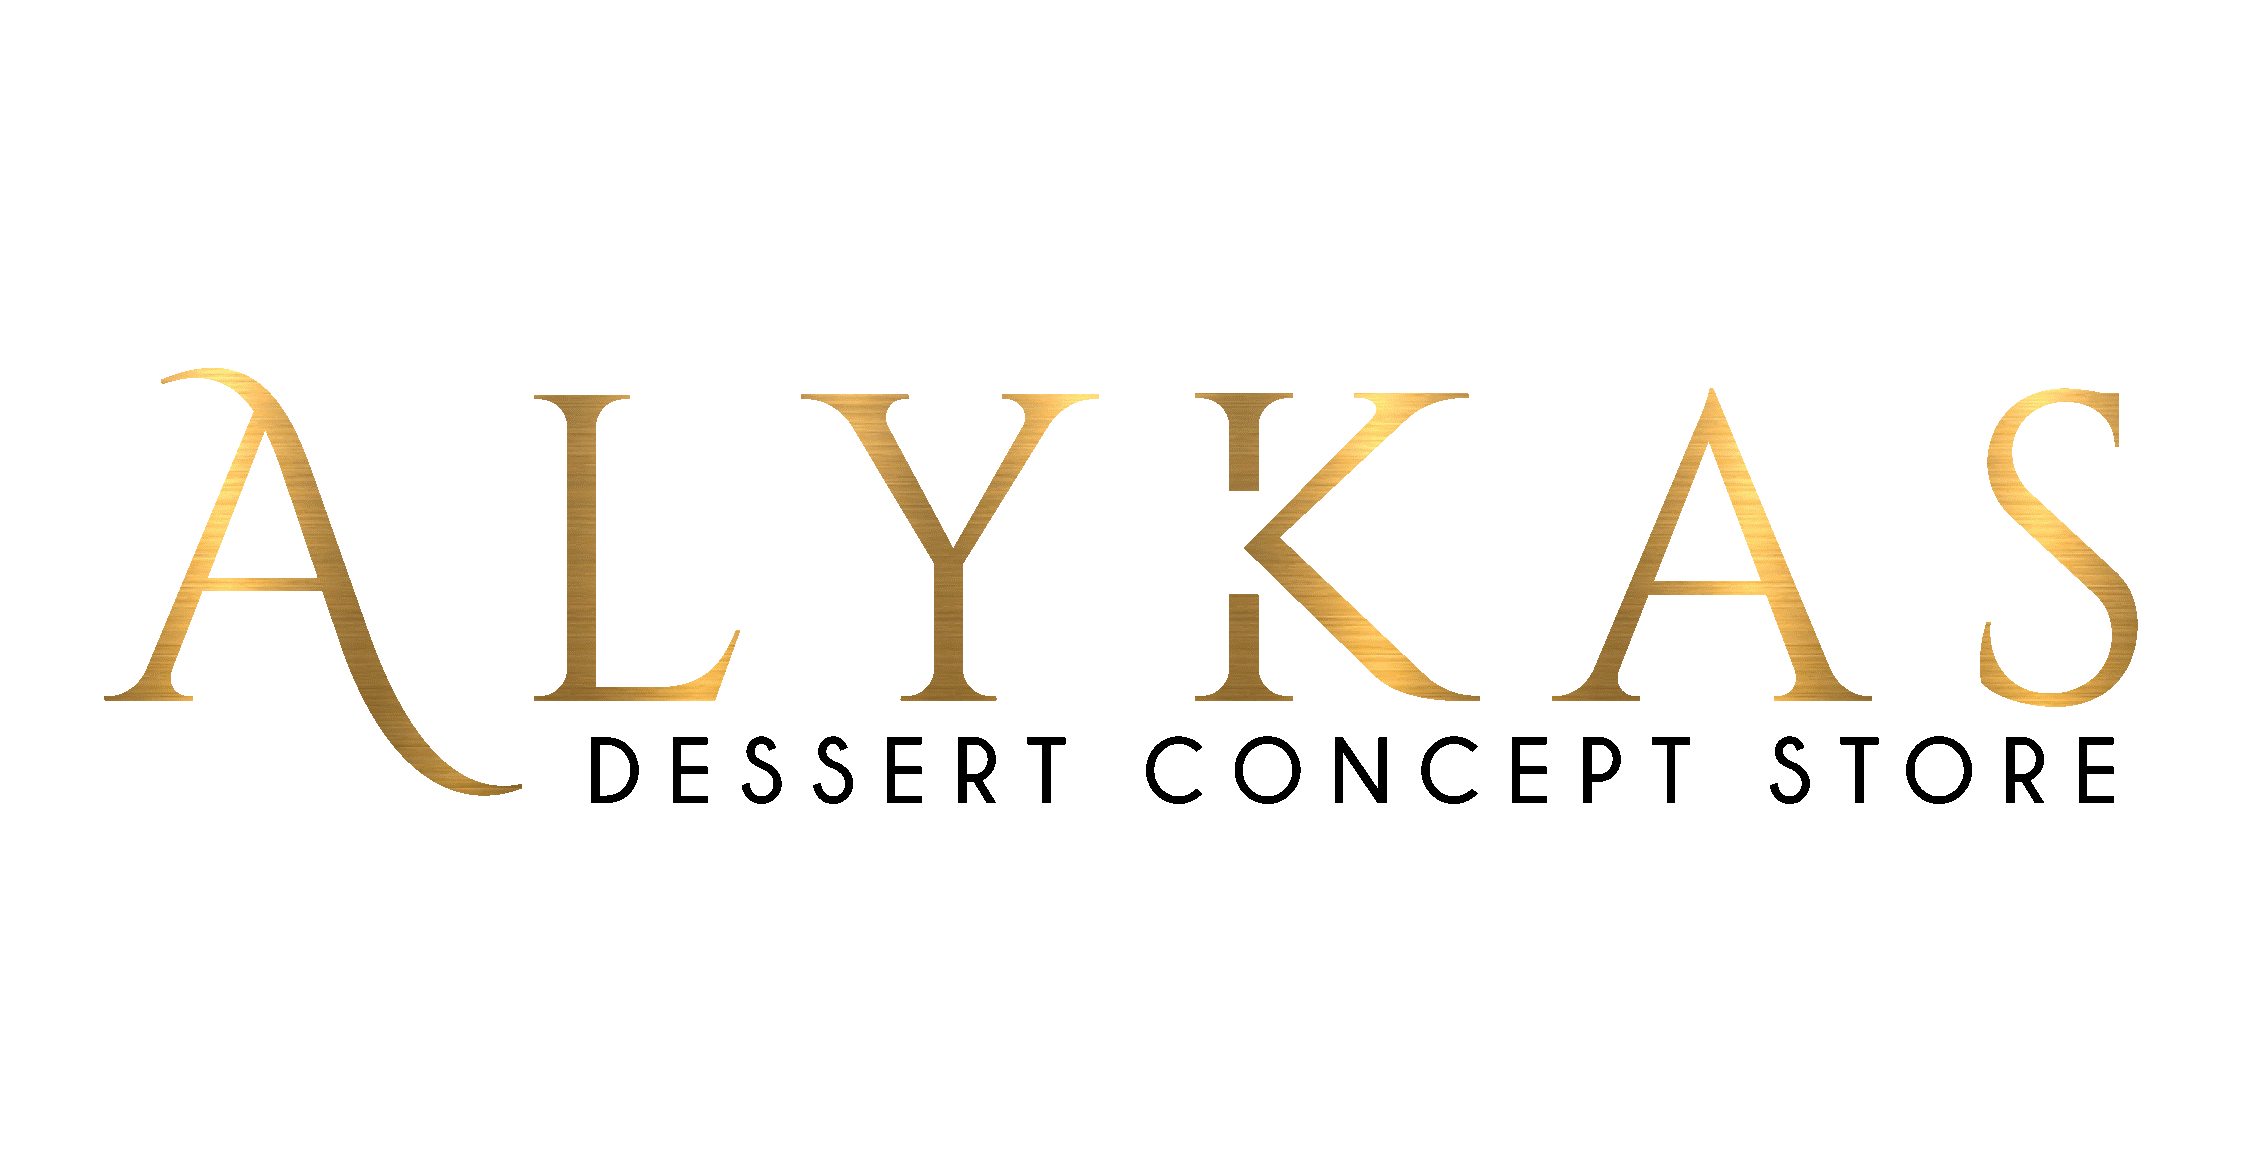 Alykas Dessert Concept Store